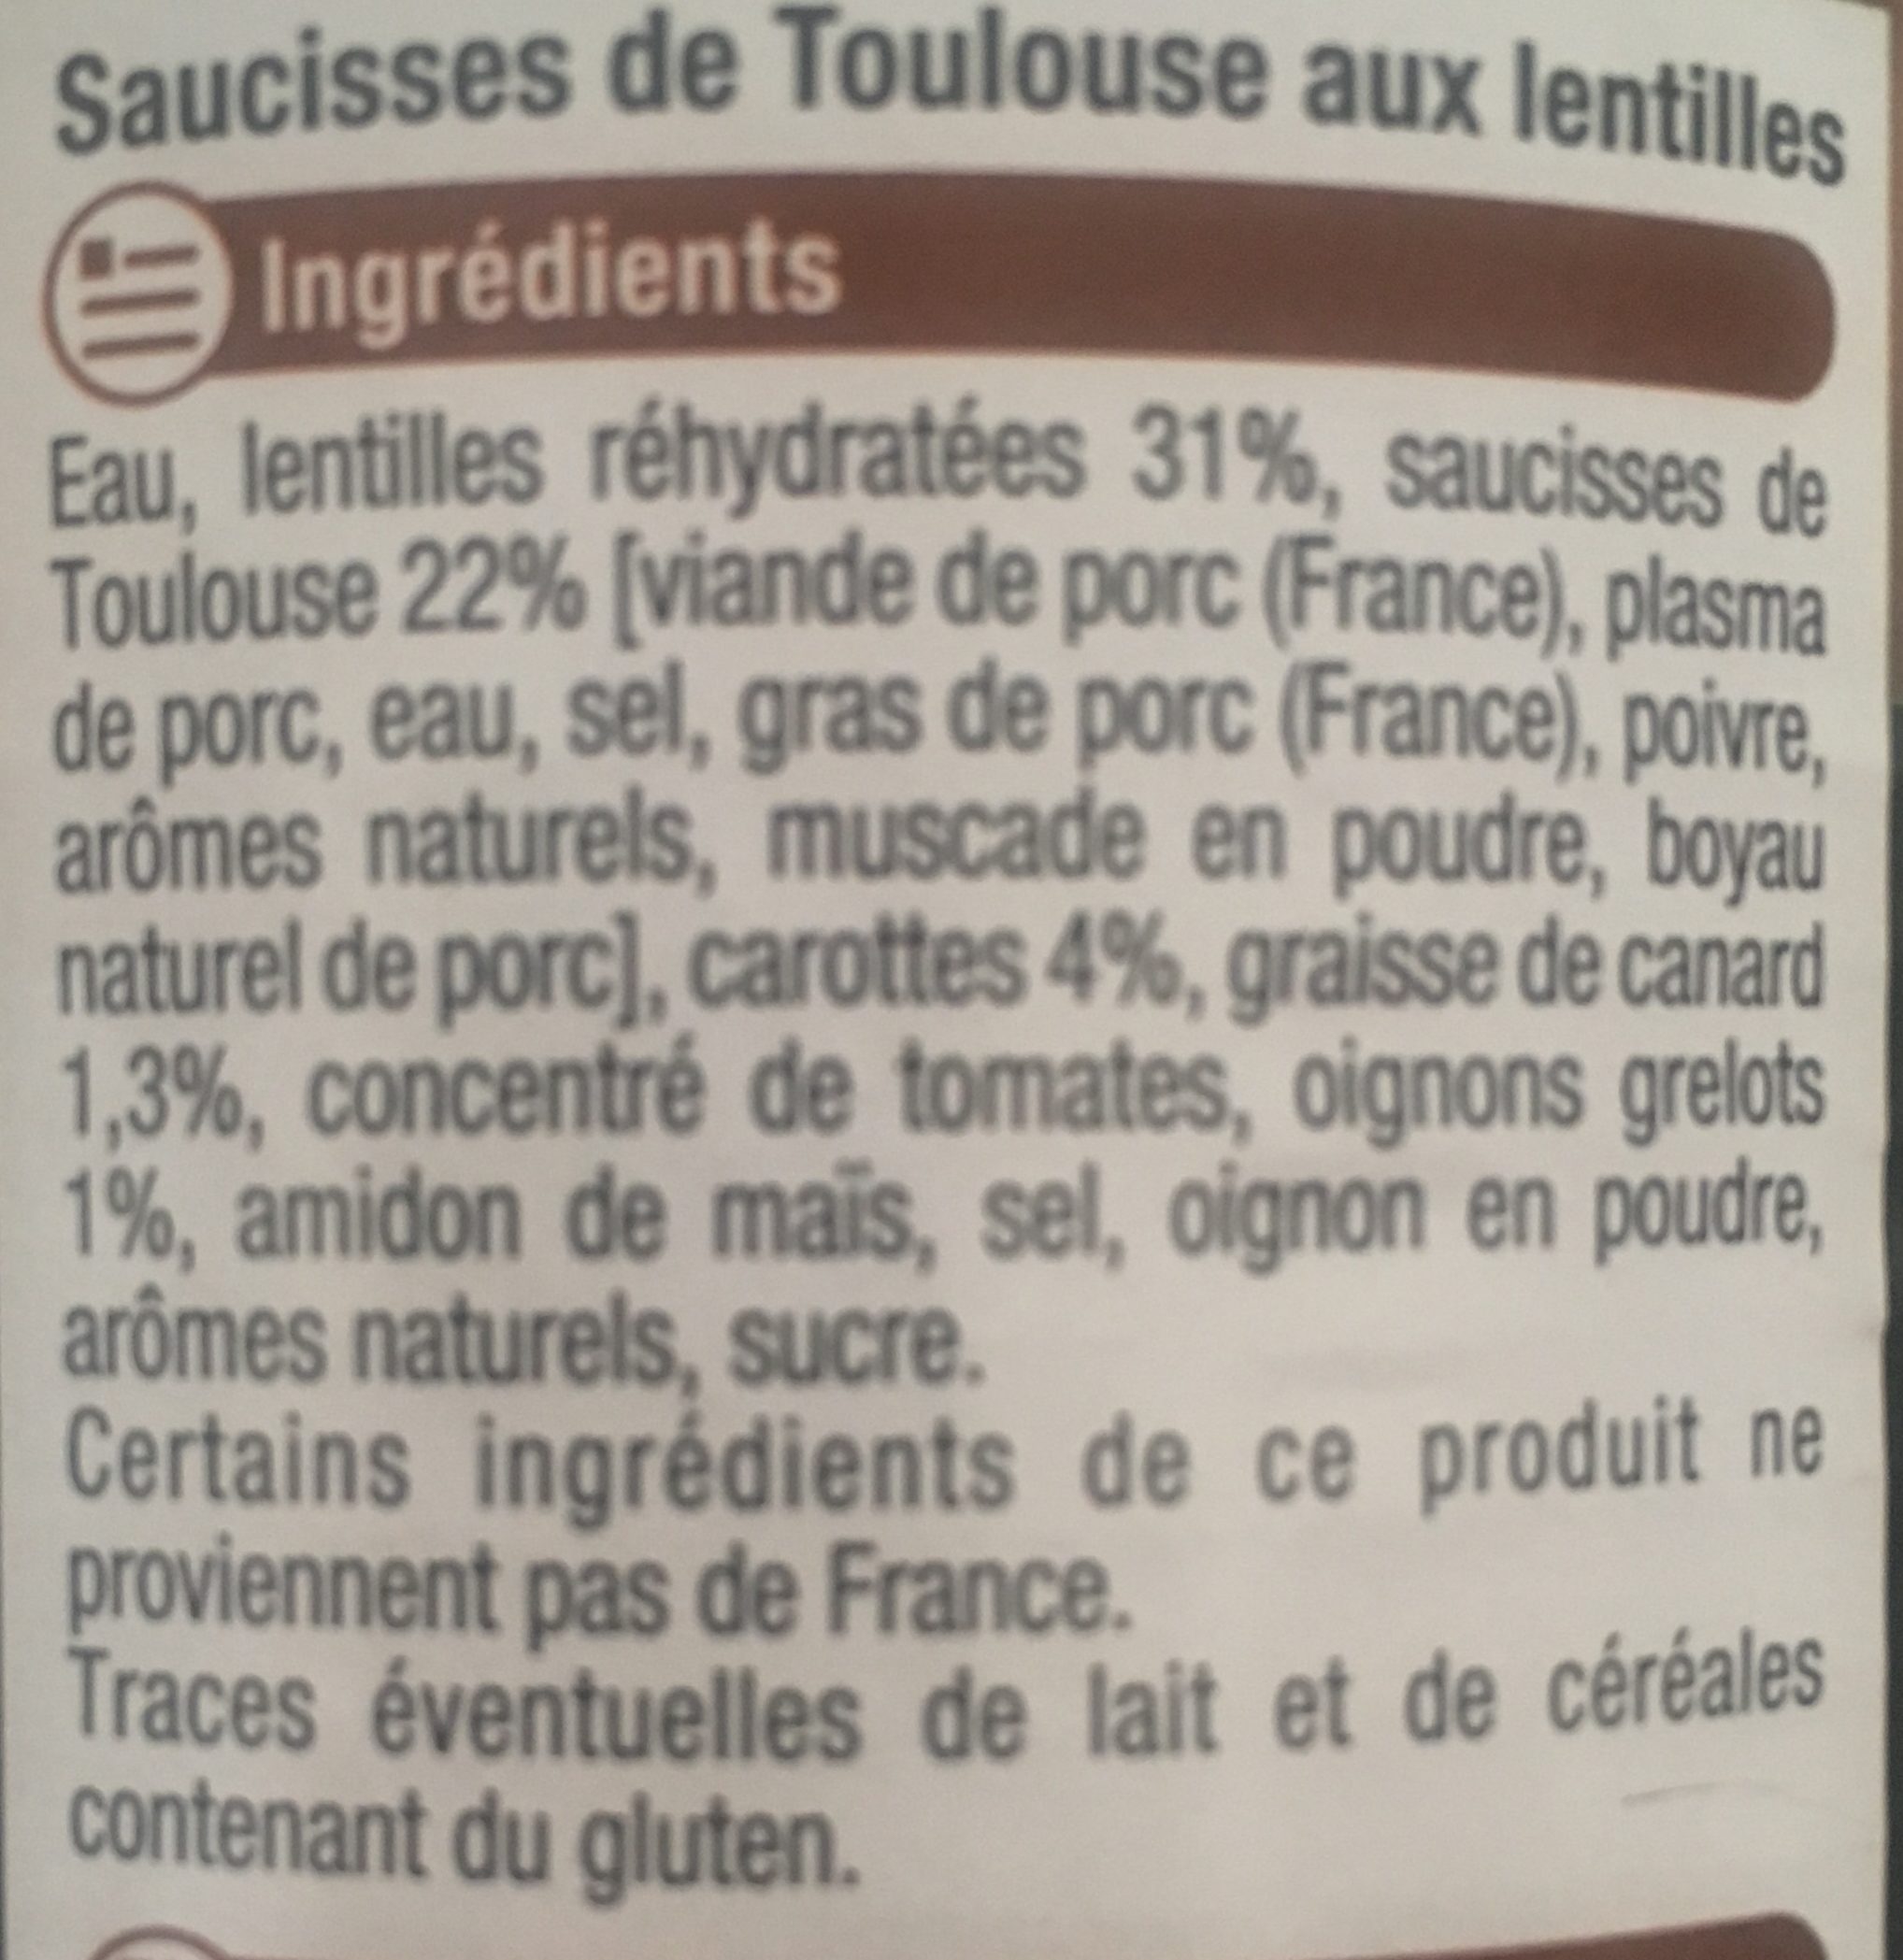 Saucisses de Toulouse aux lentilles - Ingredients - fr